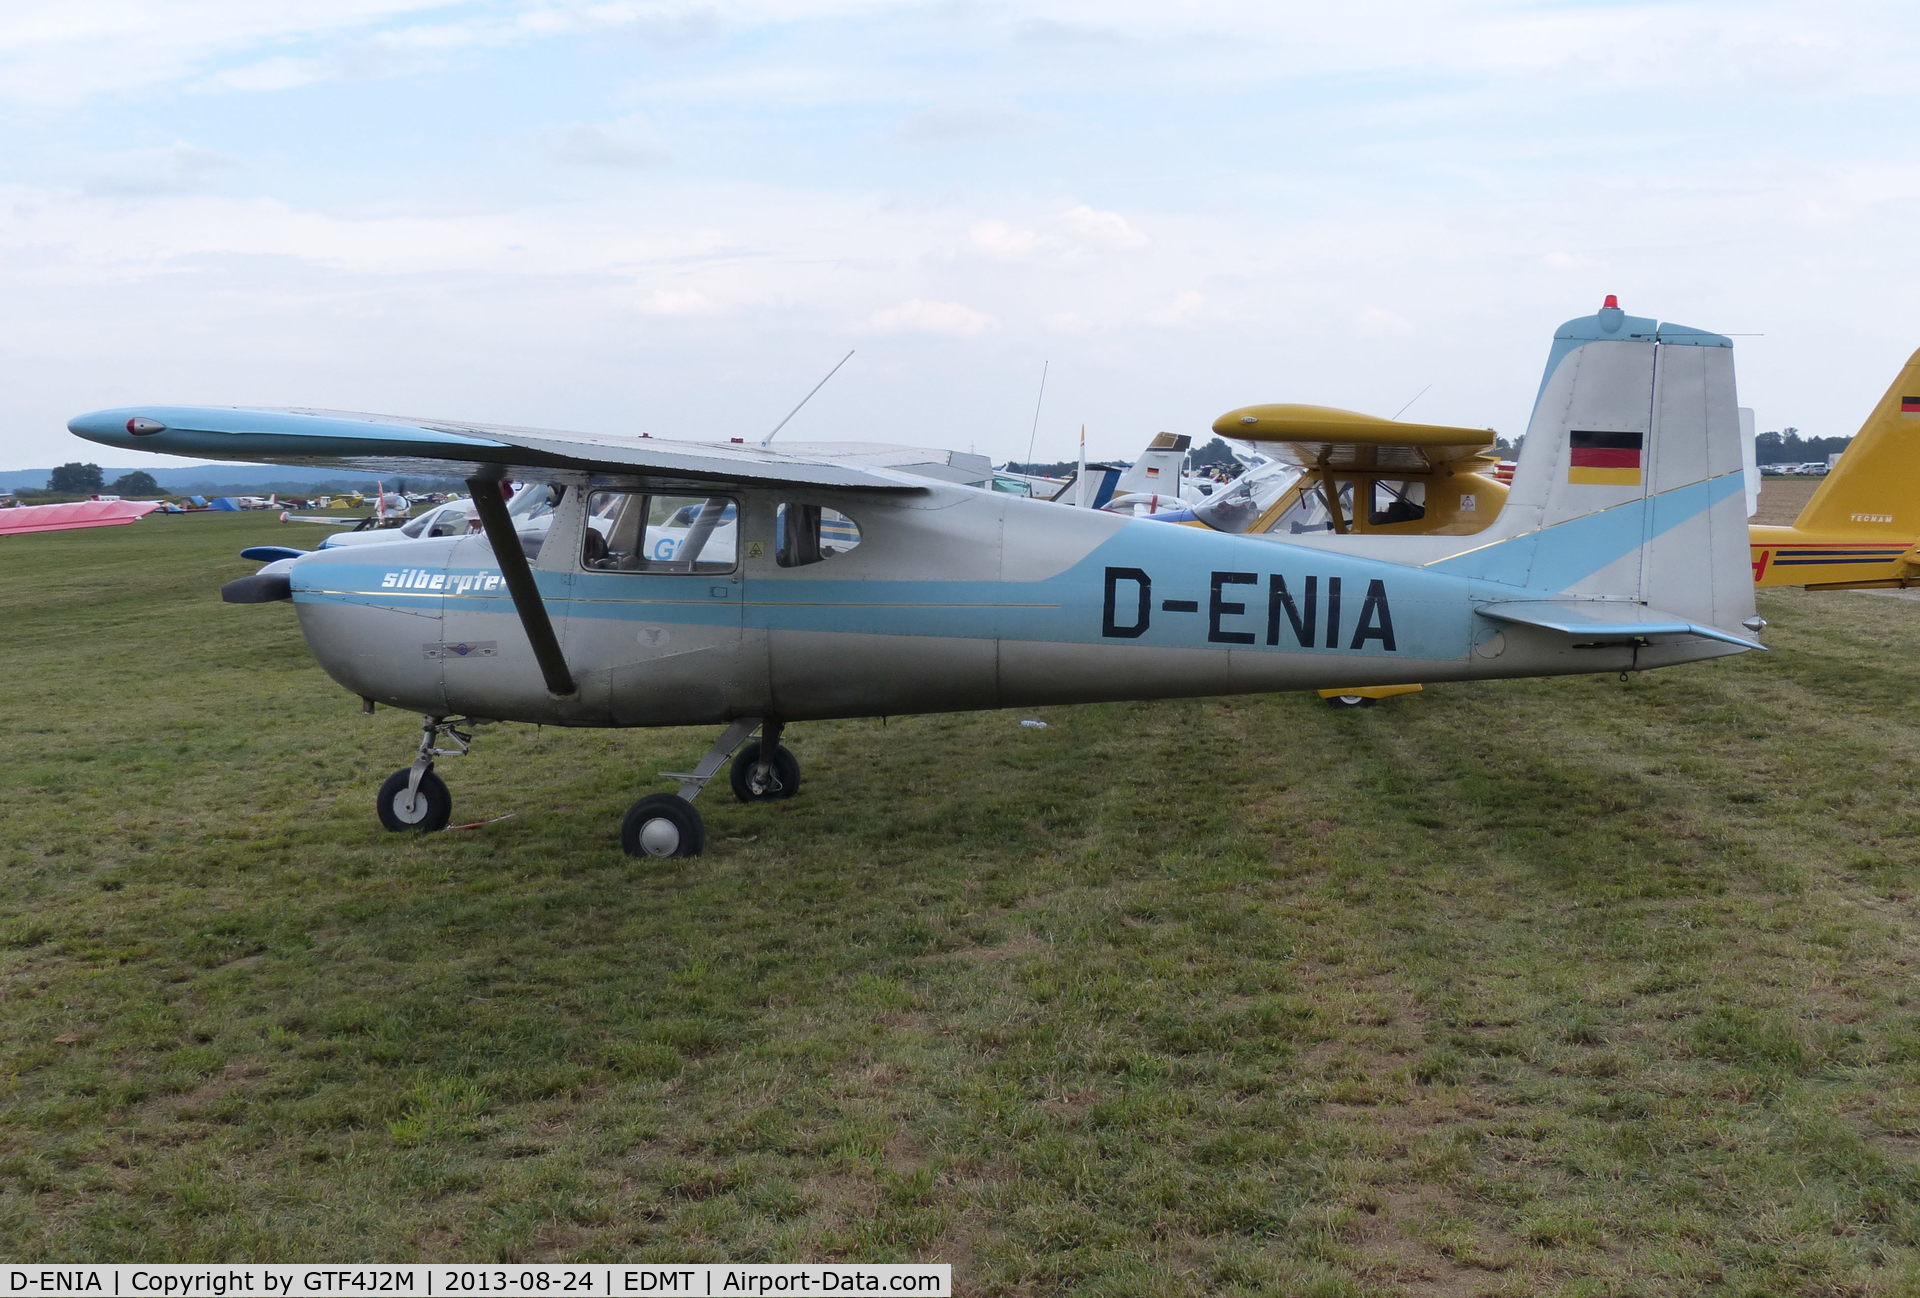 D-ENIA, Cessna 150 C/N 17844, D-ENIA at Tannheim 24.8.13